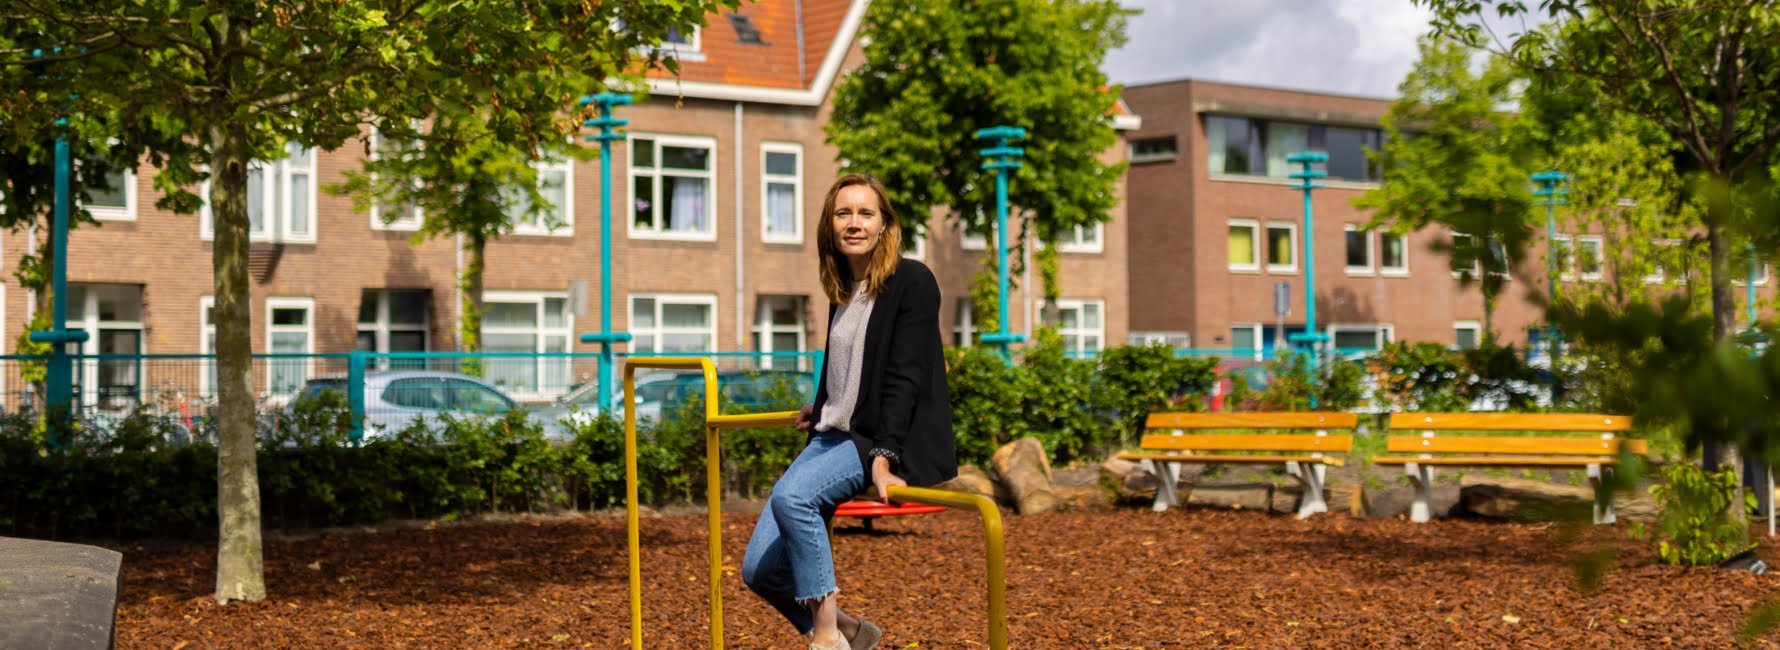 projectmanager Annerieke in speeltuin gemeente Utrecht